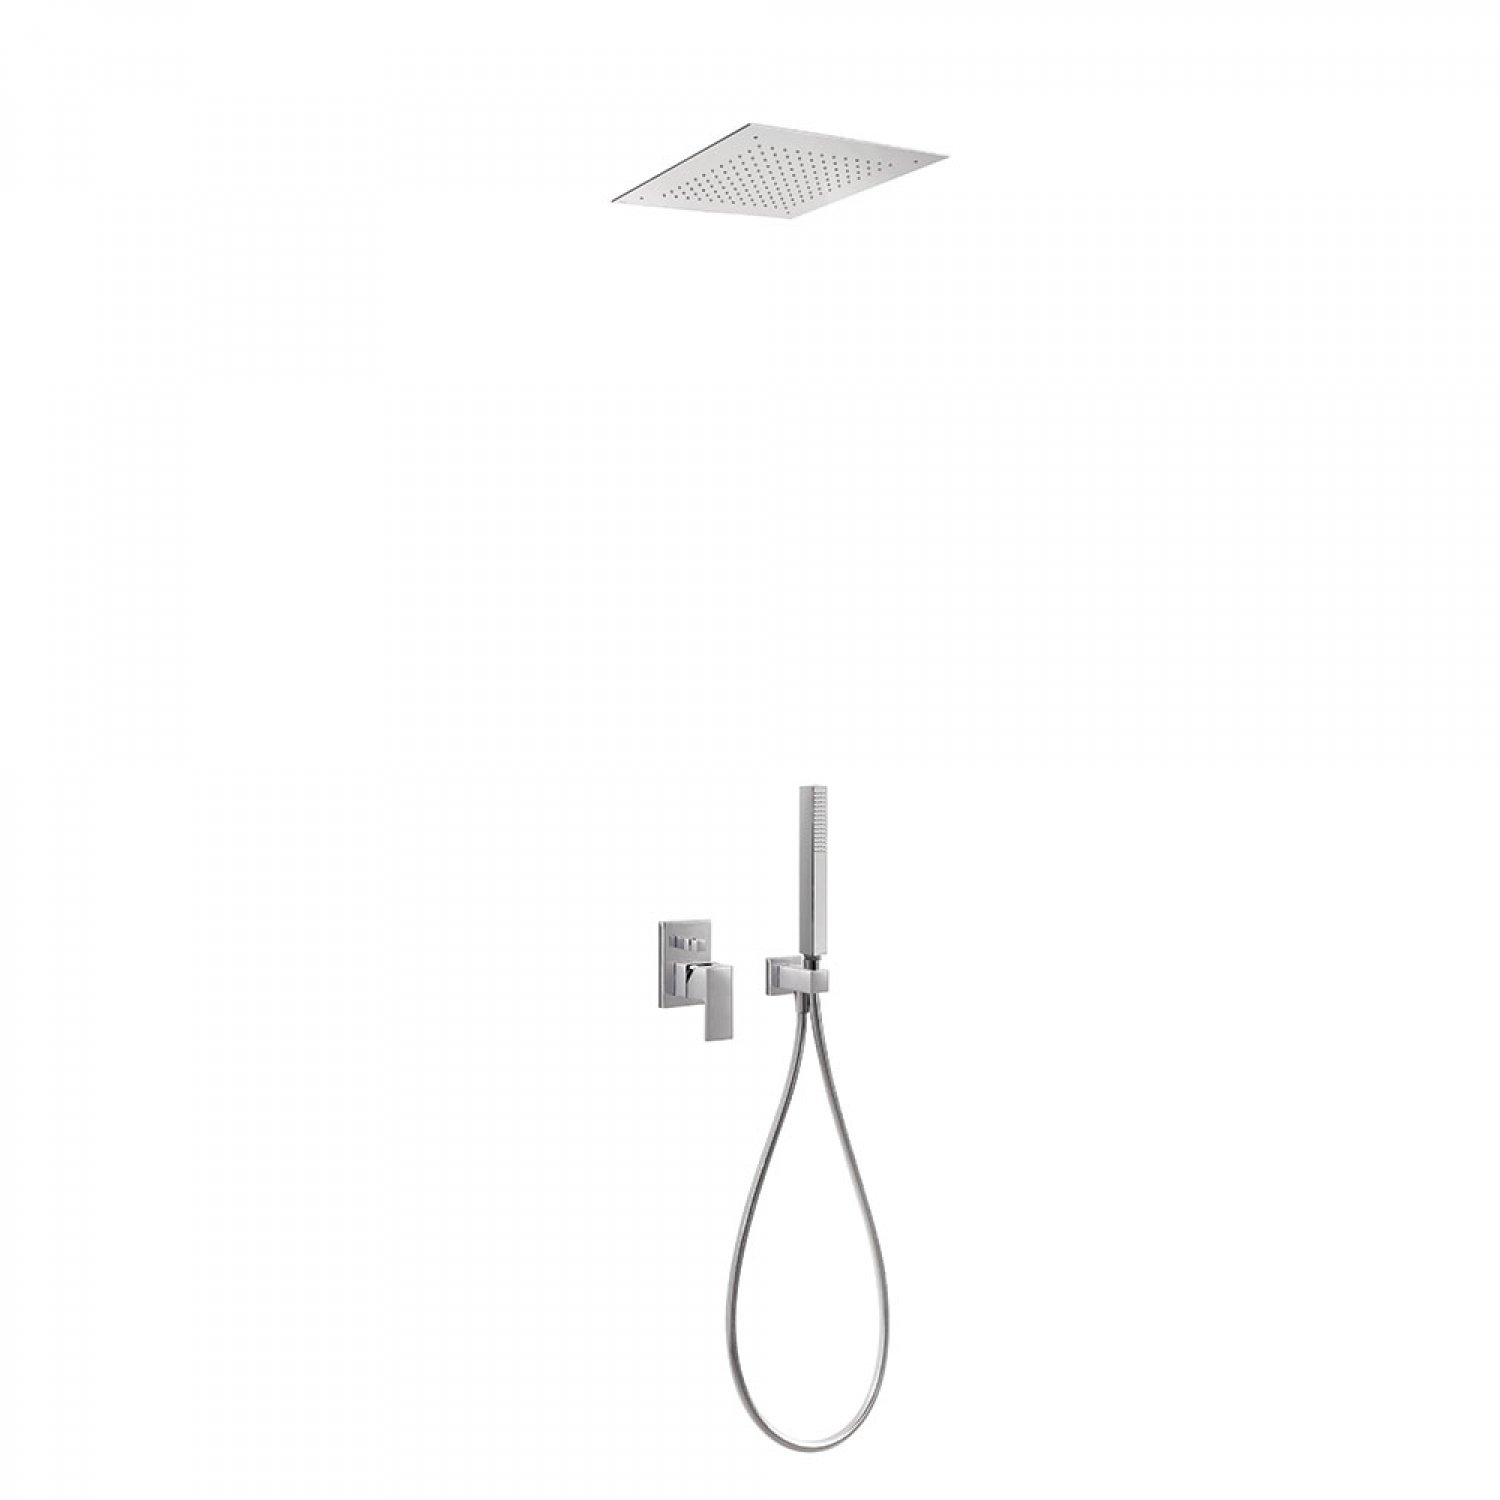 http://desidea.hu/wp-content/uploads/2019/07/Concealed-shower-set-00698001.jpg